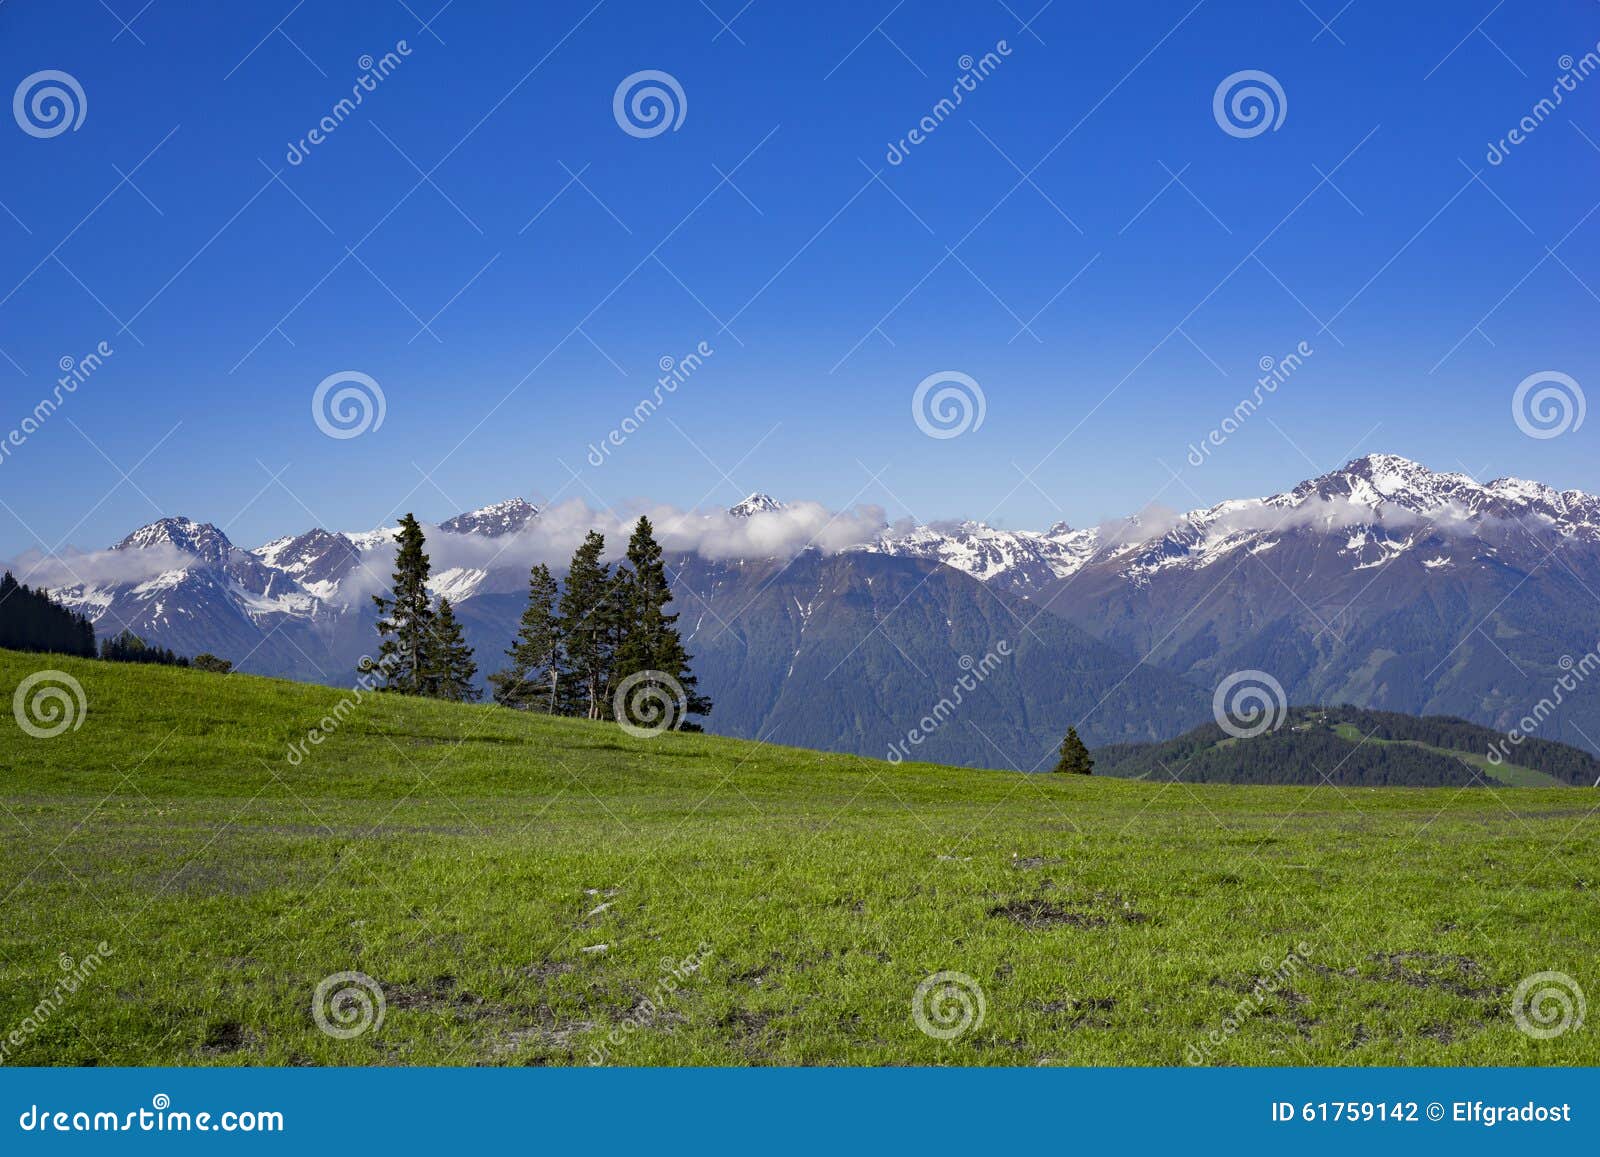 Prado alto nas montanhas com as montanhas nevado na parte traseira e em alguns abeto